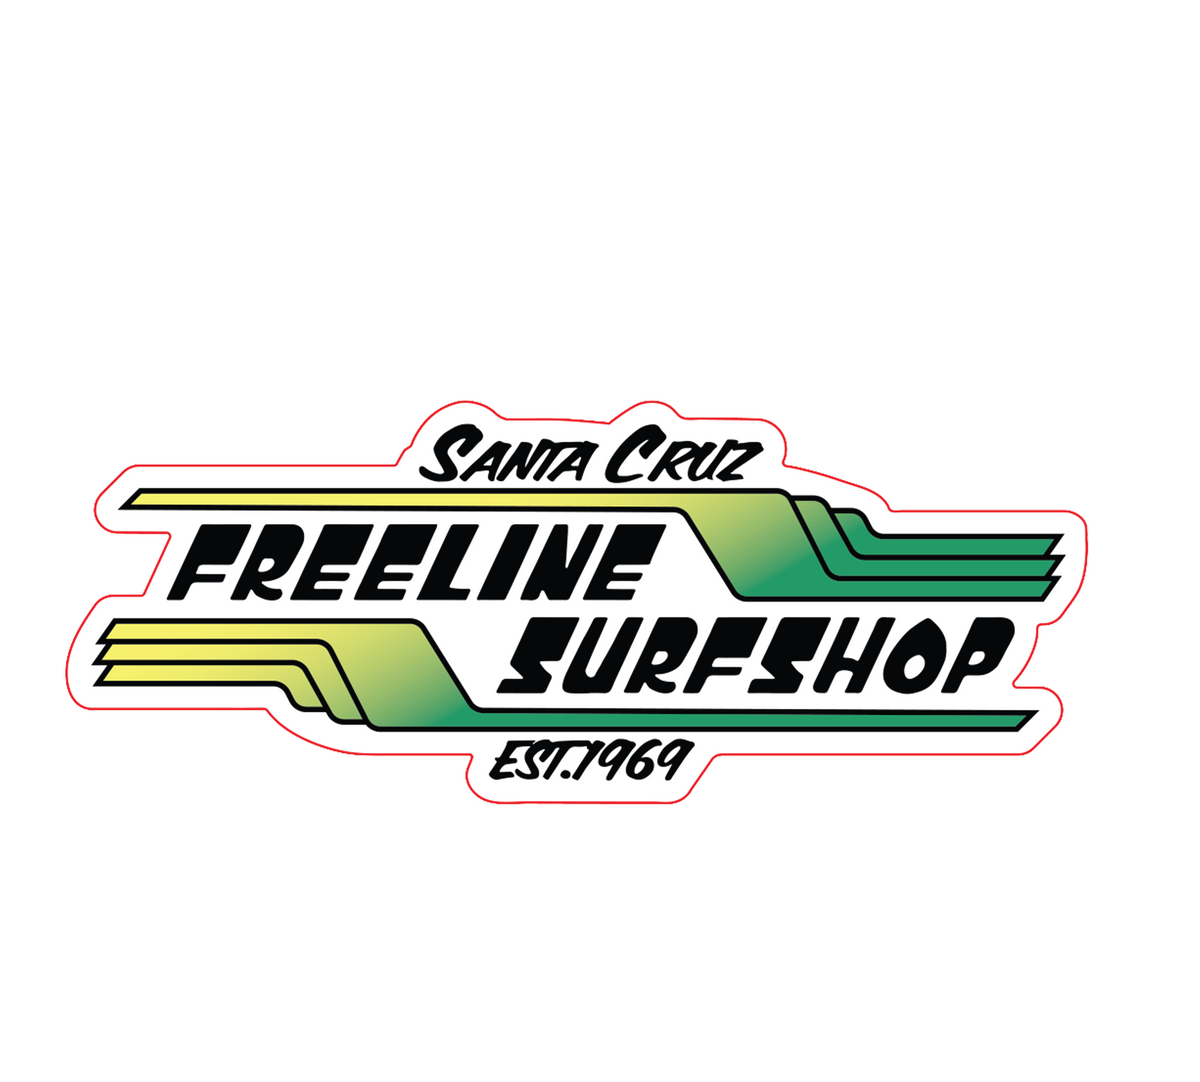 Freeline Surf Shop Stickers